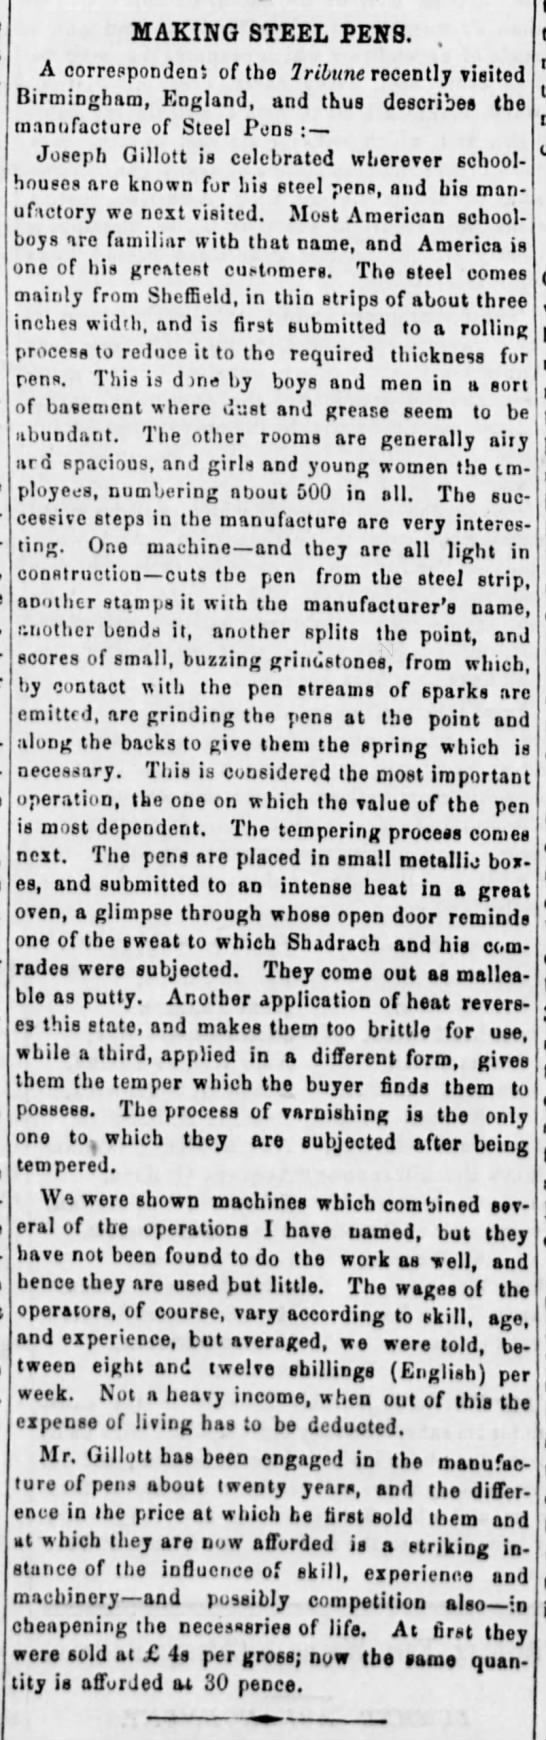 1859 - Making Steel Pens - Gillott, from Tribune - 